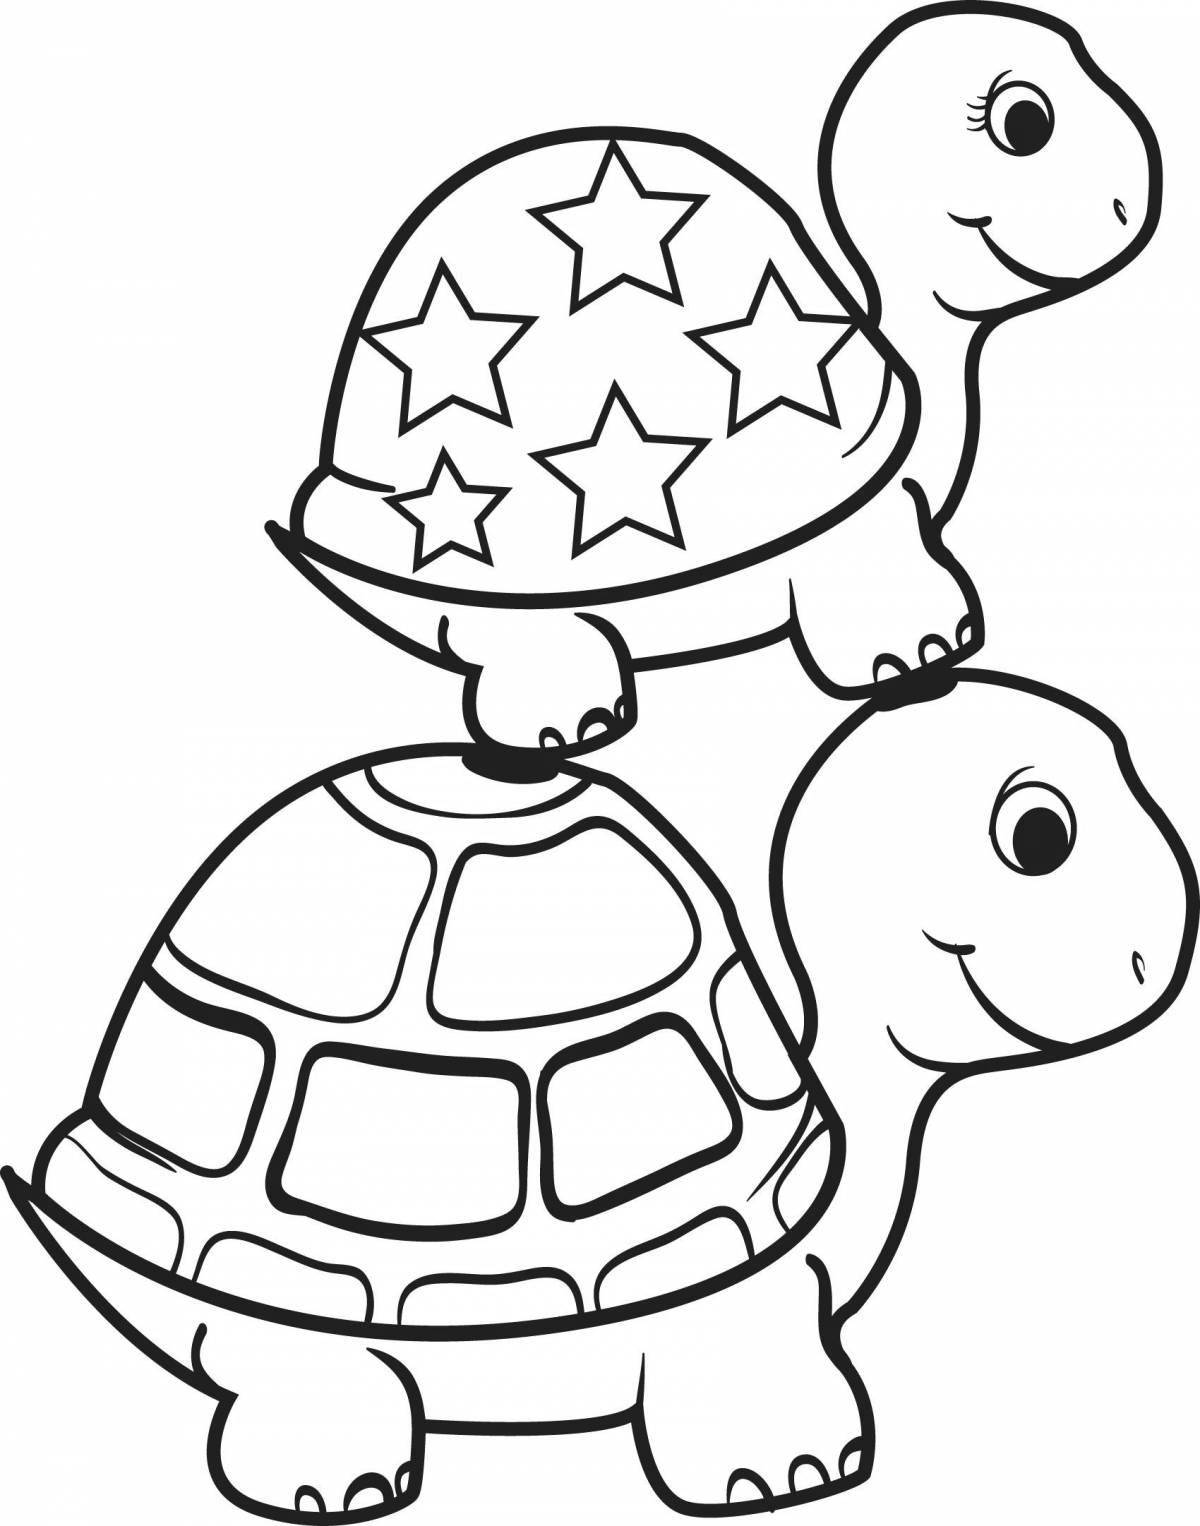 Увлекательная раскраска черепаха майнкрафт